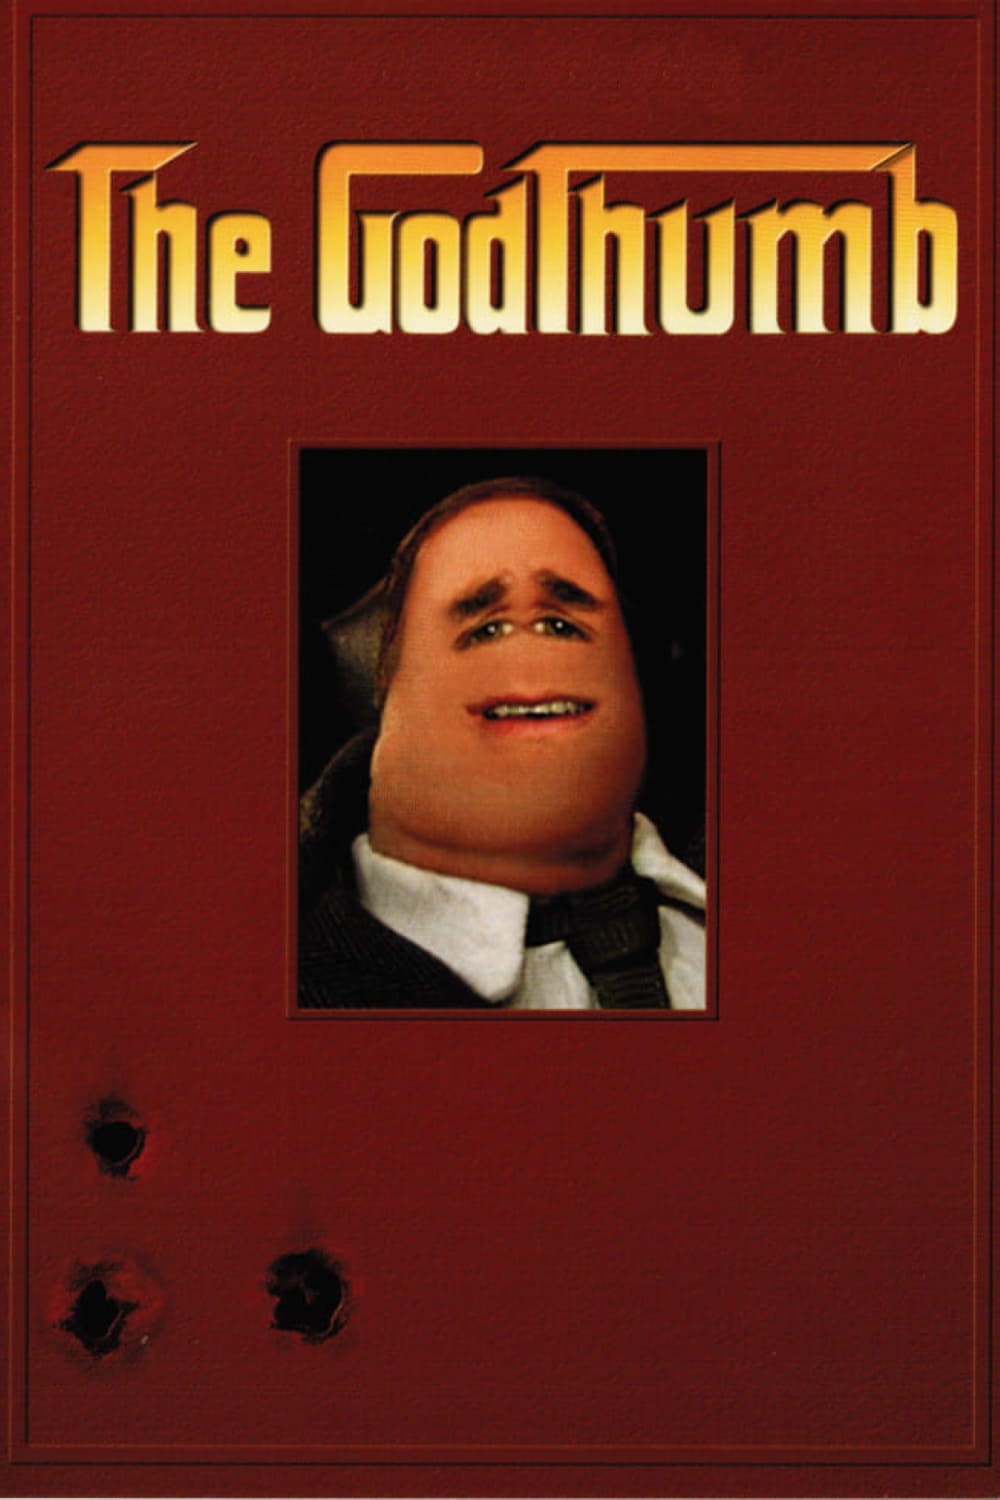 The Godthumb (2002)